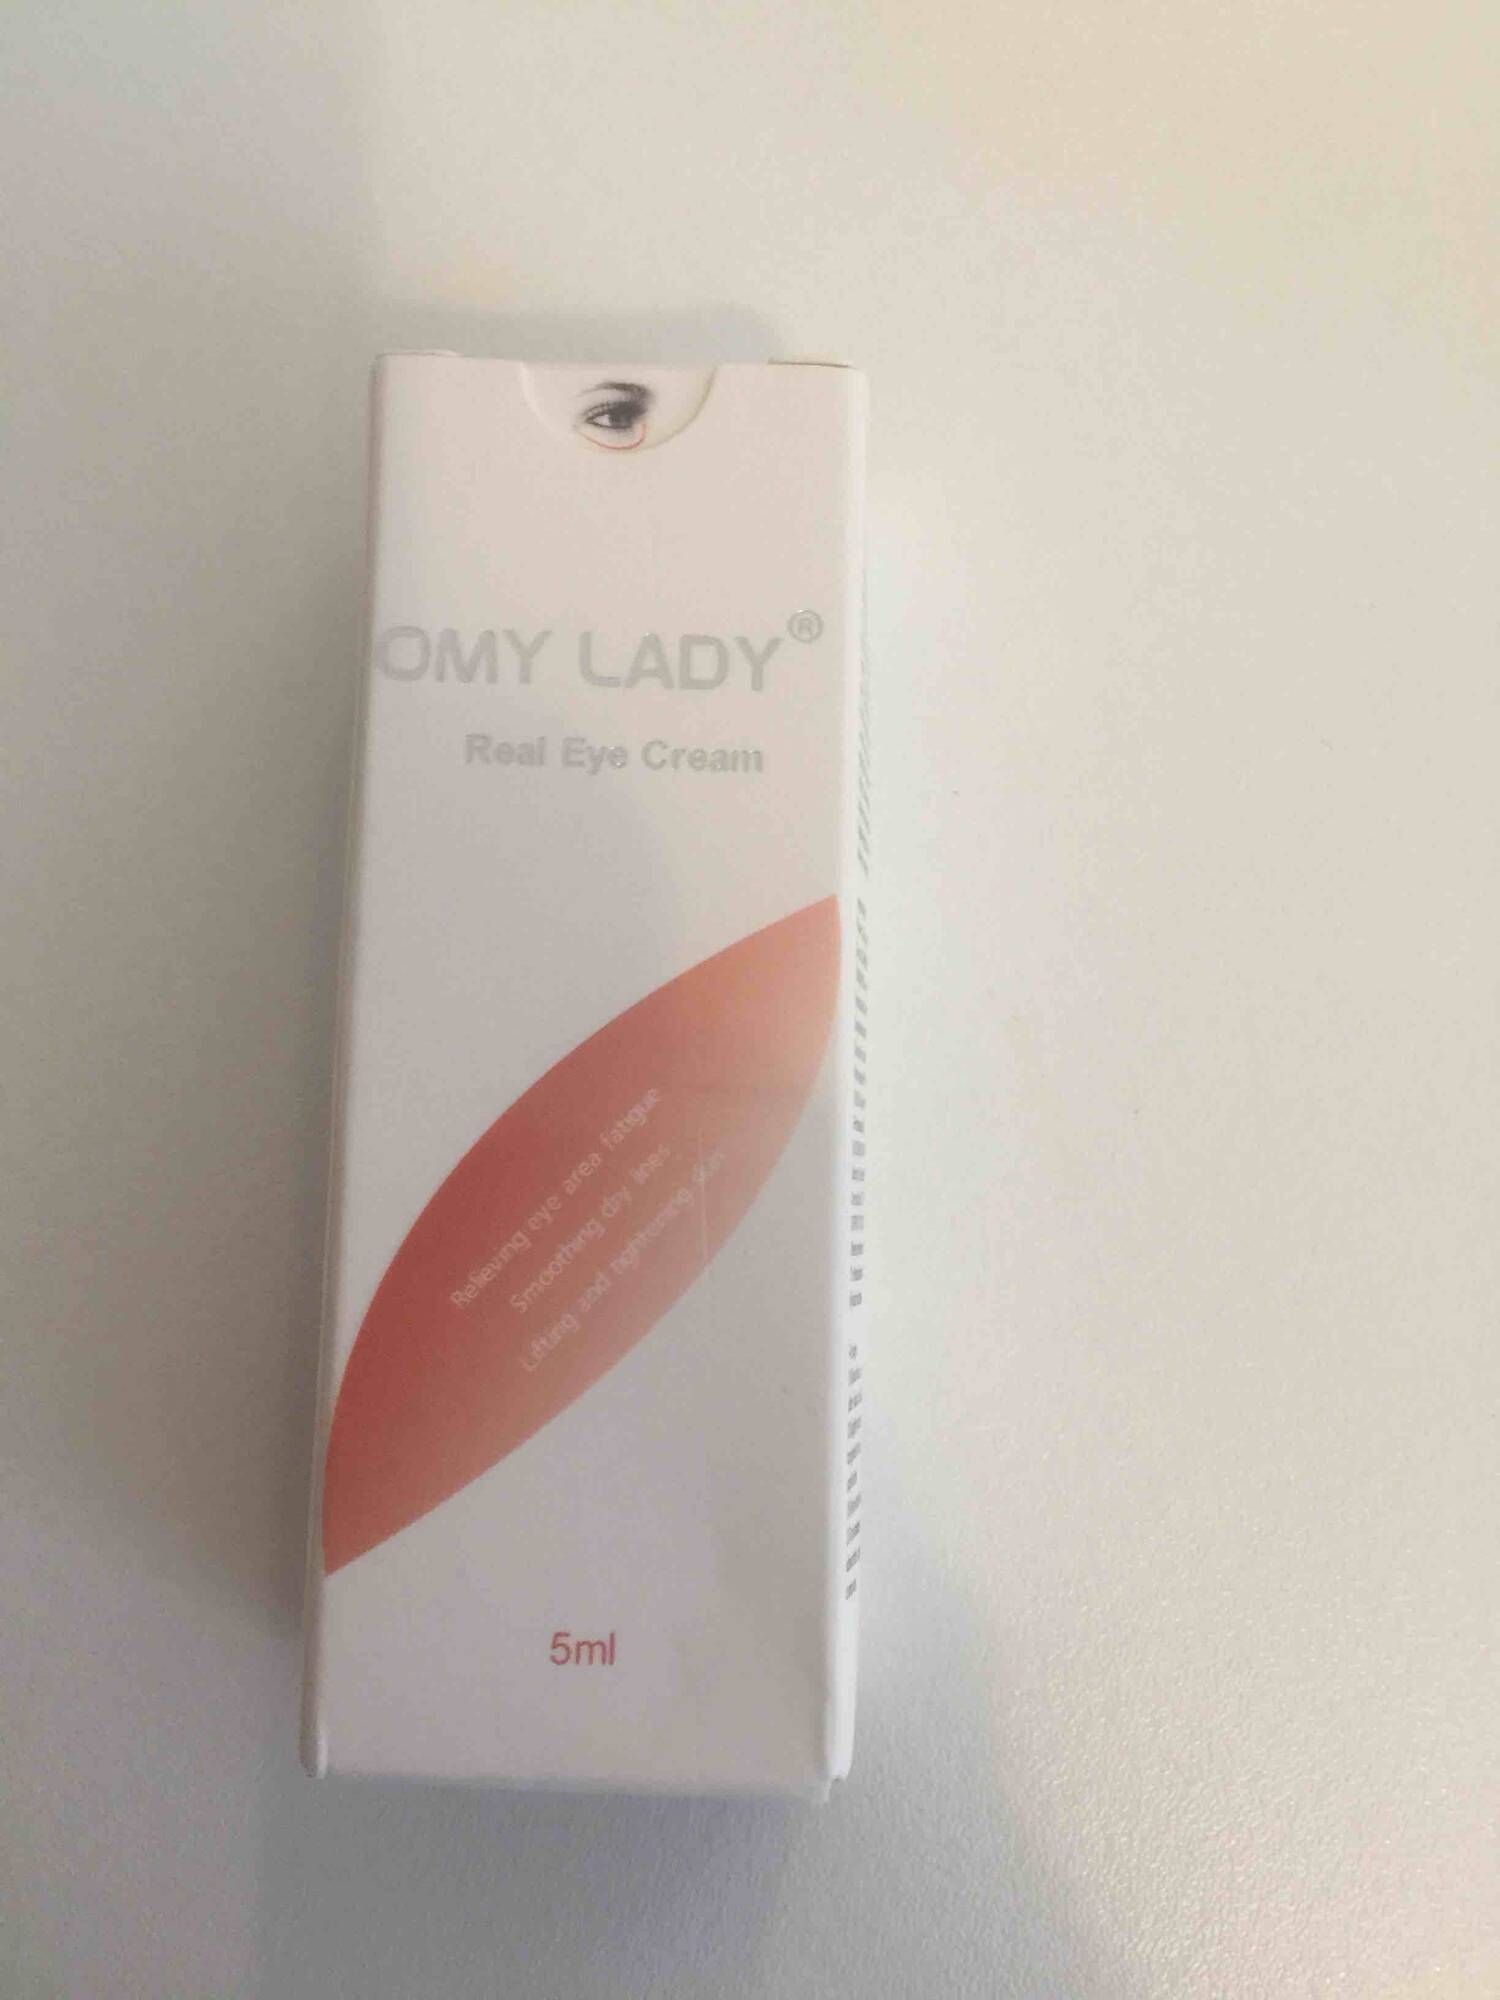 OMY LADY - Real eye cream